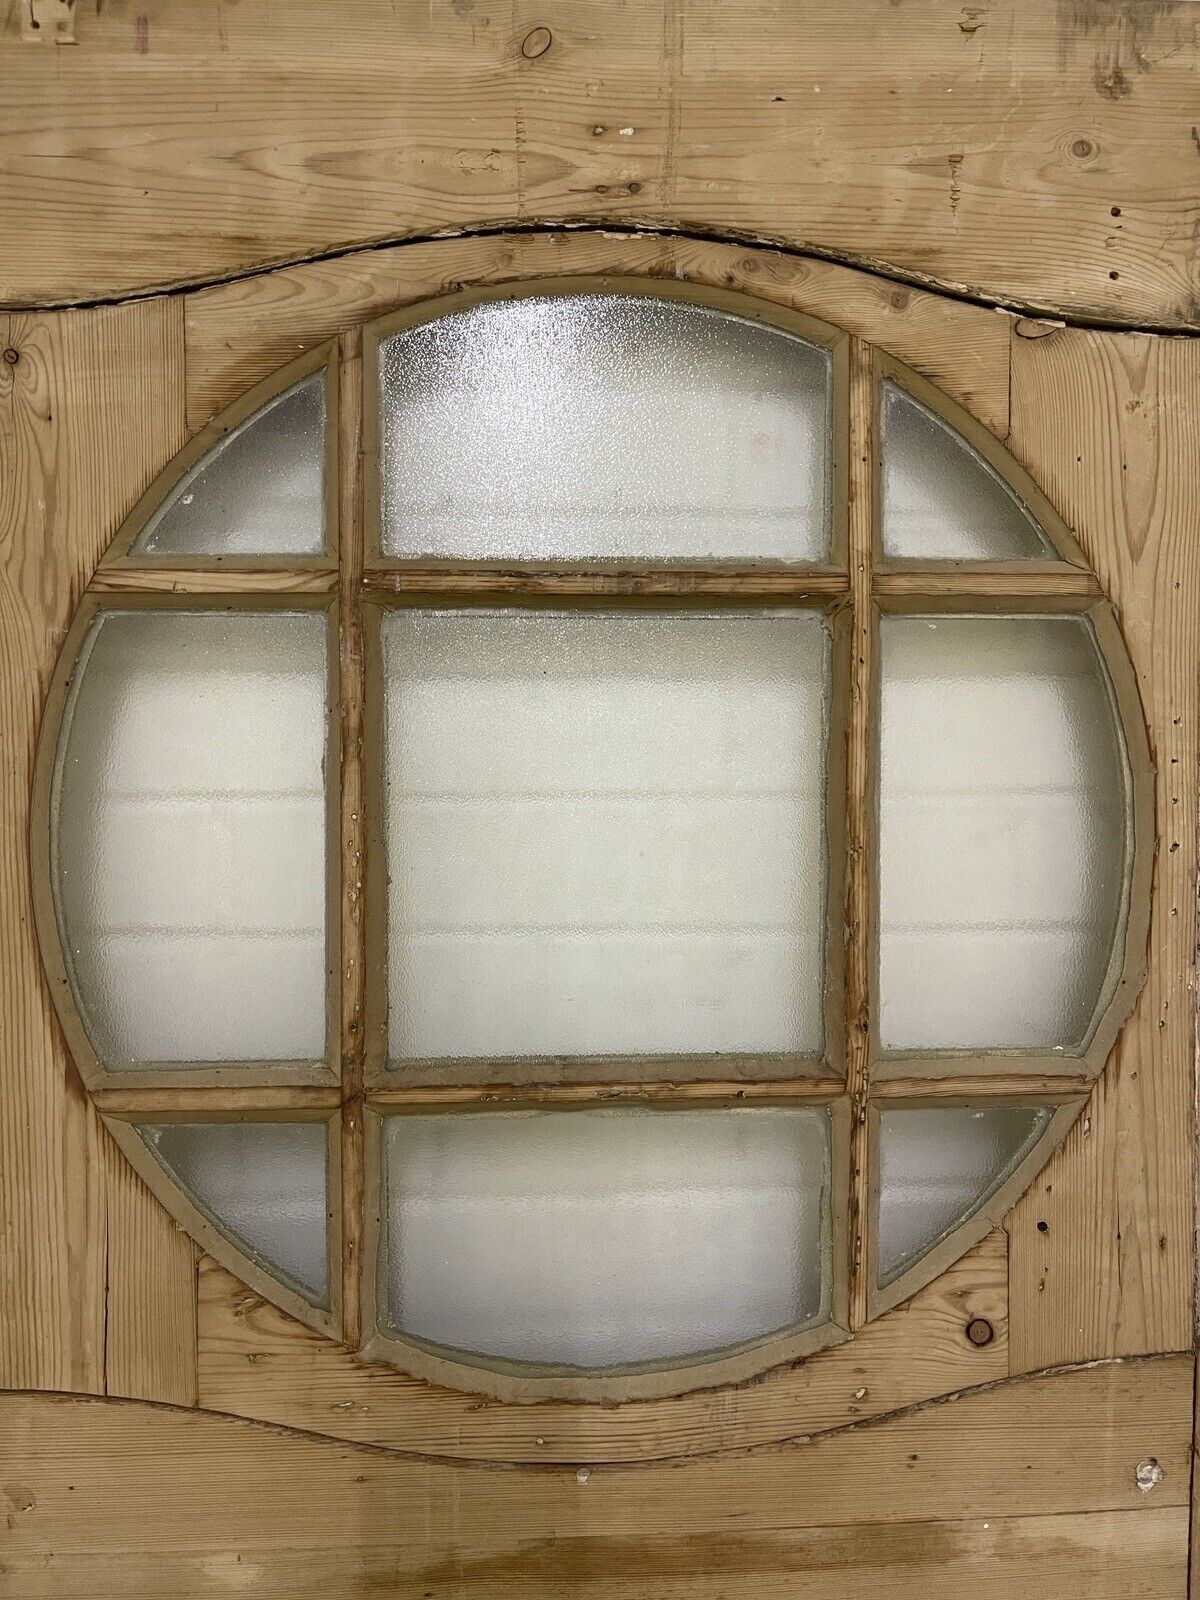 Reclaimed Victorian Edwardian Wooden Panel External Front Door 2025 x 836mm